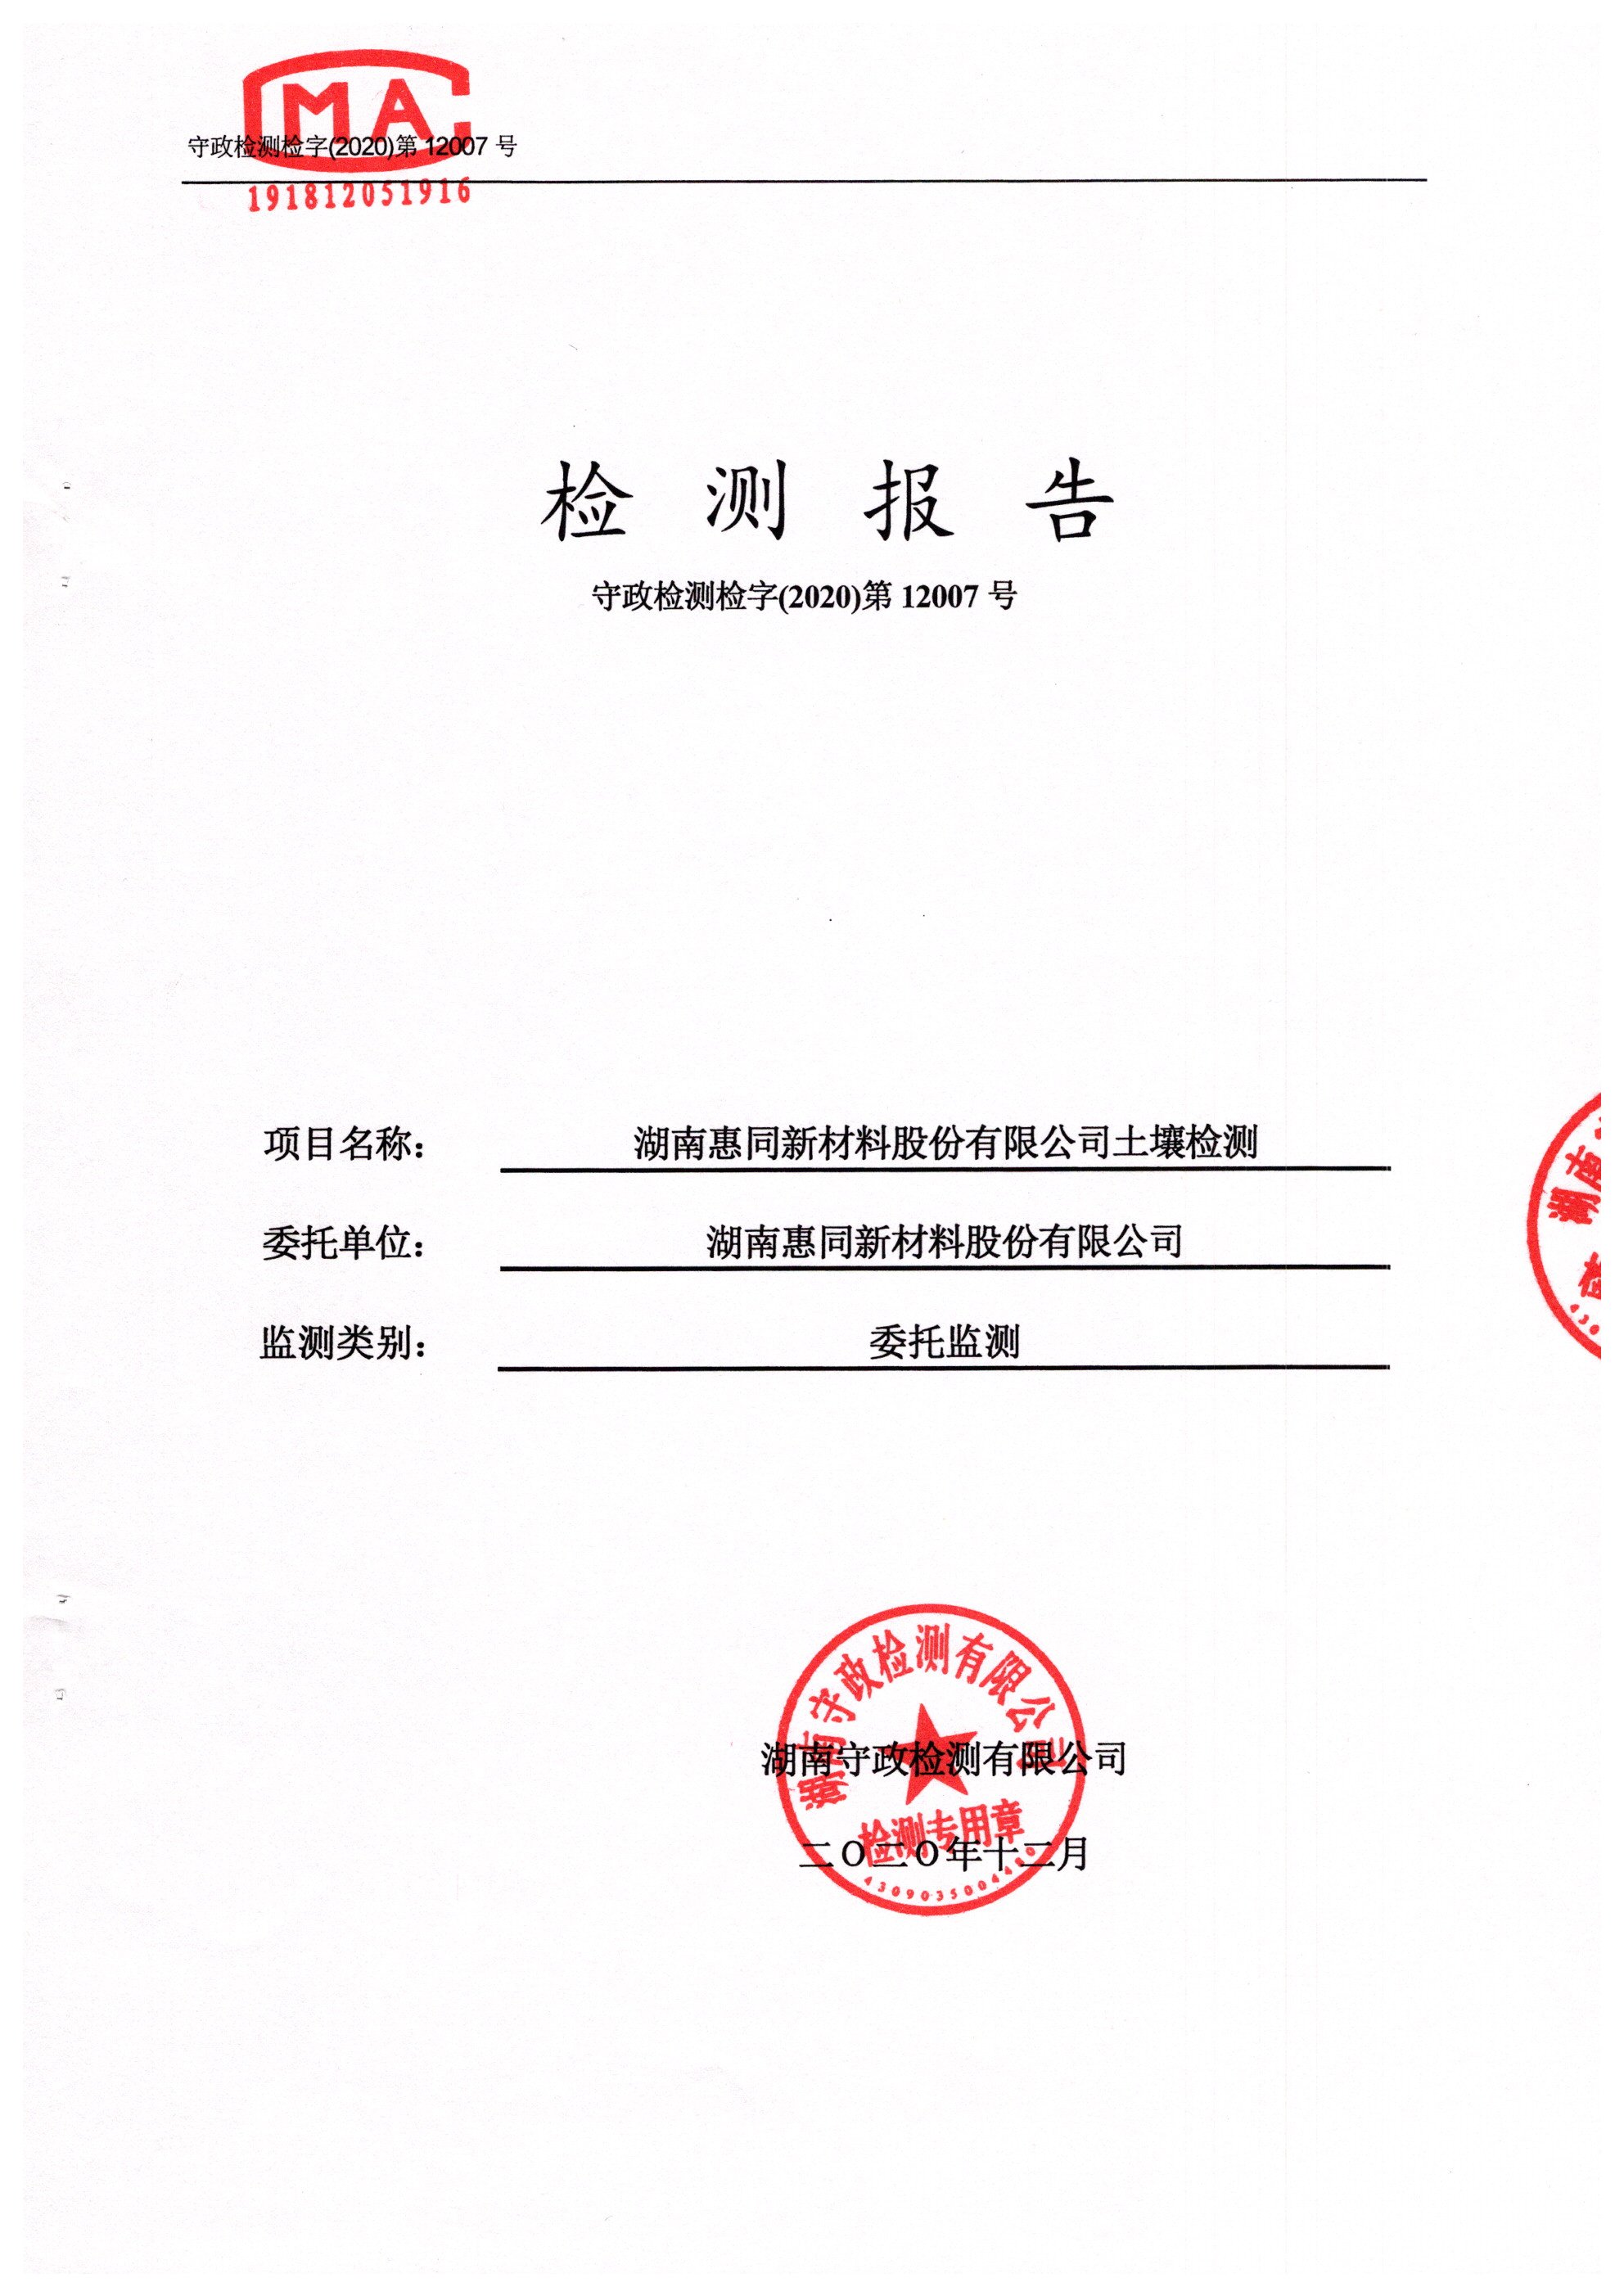 【太阳诚娱乐网】中国有限公司
2020年12月份土壤检测报告公示（益阳）